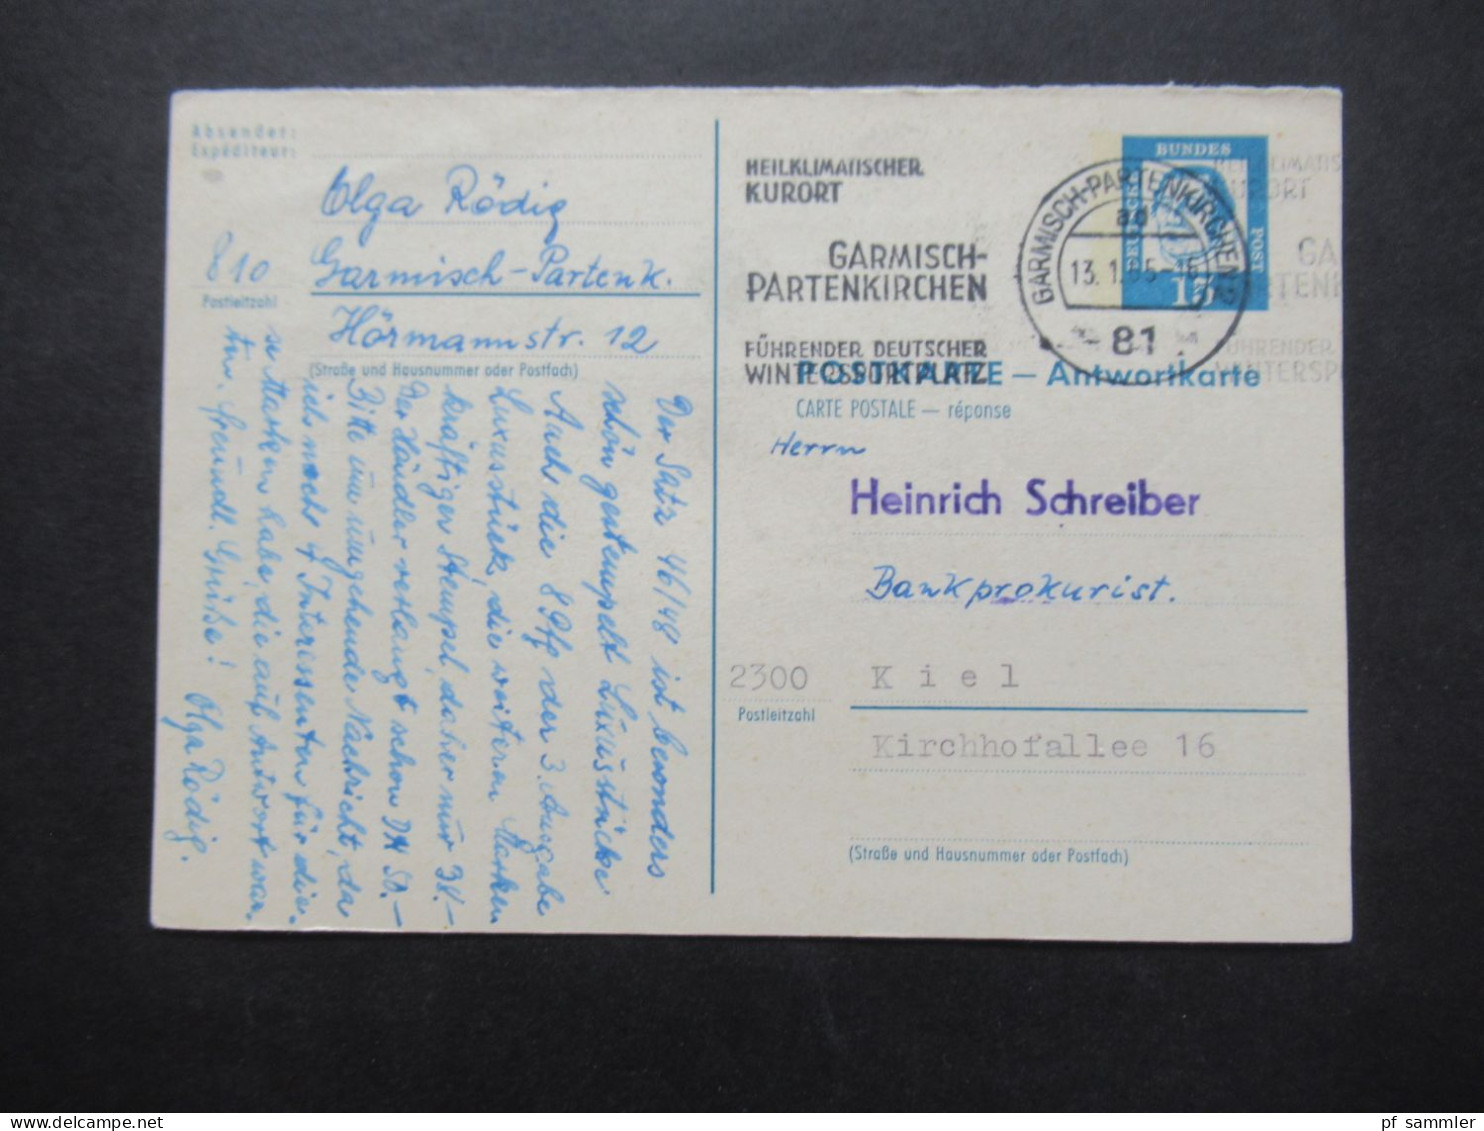 BRD 1965 Bedeutende Deutsche Ganzsache Antwortkarte P 80 A Werbestempel Garmisch Partenkirchen Kurort - Postcards - Used